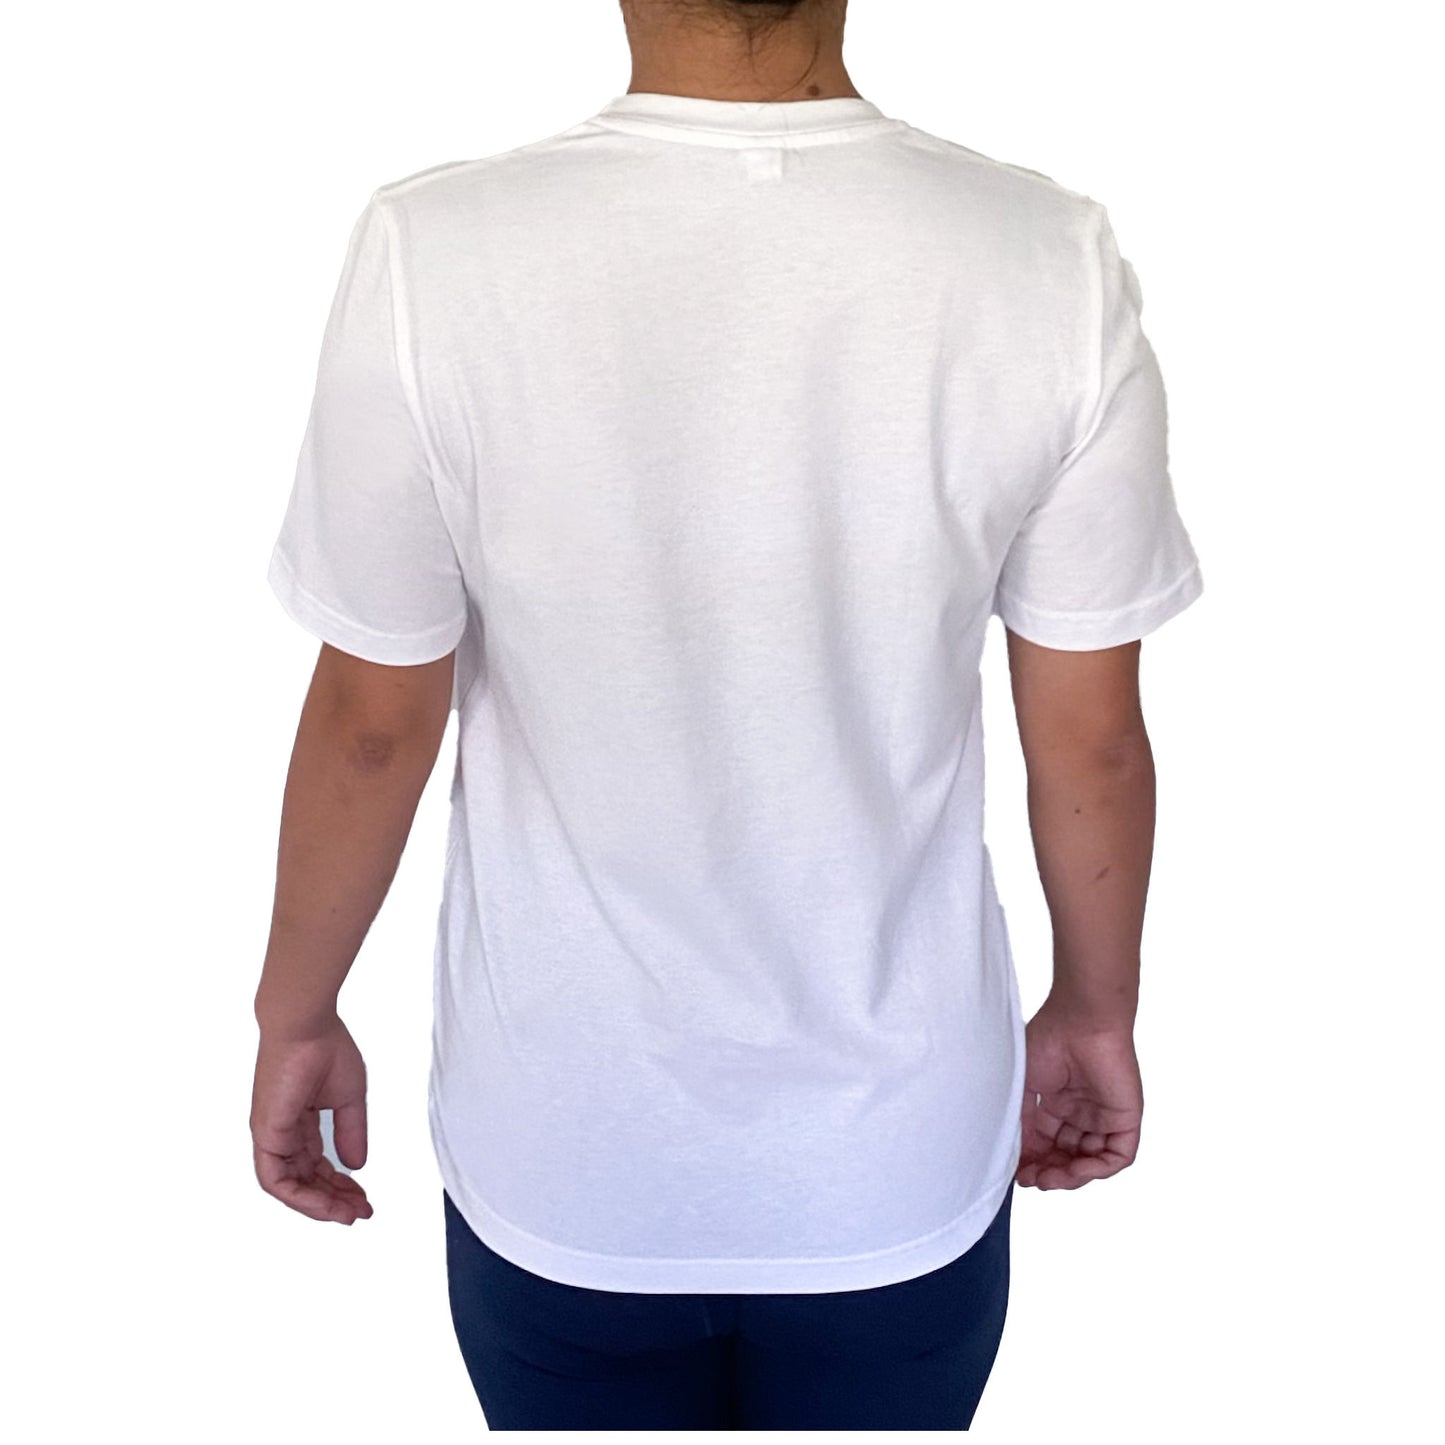 Ethically Made Organic Unisex White Crew Neck T-Shirt - 'I Like My Mask Better'